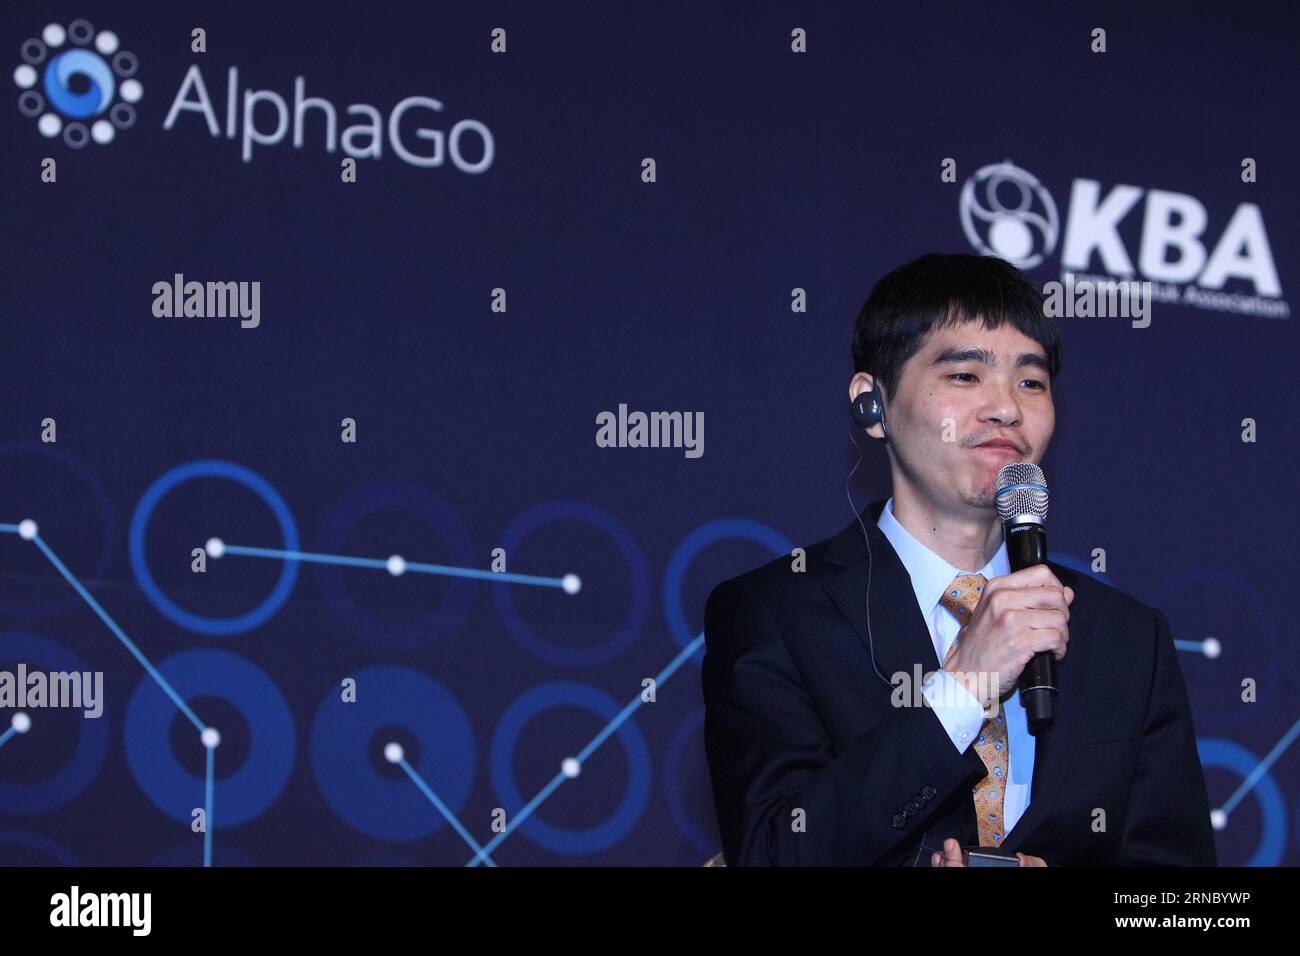 (160315) -- SÉOUL, le 15 mars 2016 -- le joueur professionnel sud-coréen Lee Sedol assiste à une conférence de presse après avoir terminé le match final du Google DeepMind Challenge Match contre le programme d'intelligence artificielle de Google, AlphaGo, à Séoul, Corée du Sud, le 15 mars 2016. le programme informatique Go-play de Google a de nouveau vaincu son adversaire humain dans un match final mardi qui a scellé sa victoire de 4-1.) (SP)CORÉE DU SUD-GO-LEE SEDOL VS ALPHAGO-CINQUIÈME TOUR YaoxQilin PUBLICATIONxNOTxINxCHN Séoul Mars 15 2016 le joueur professionnel sud-coréen de Go Lee assiste à une conférence de presse après avoir terminé Banque D'Images